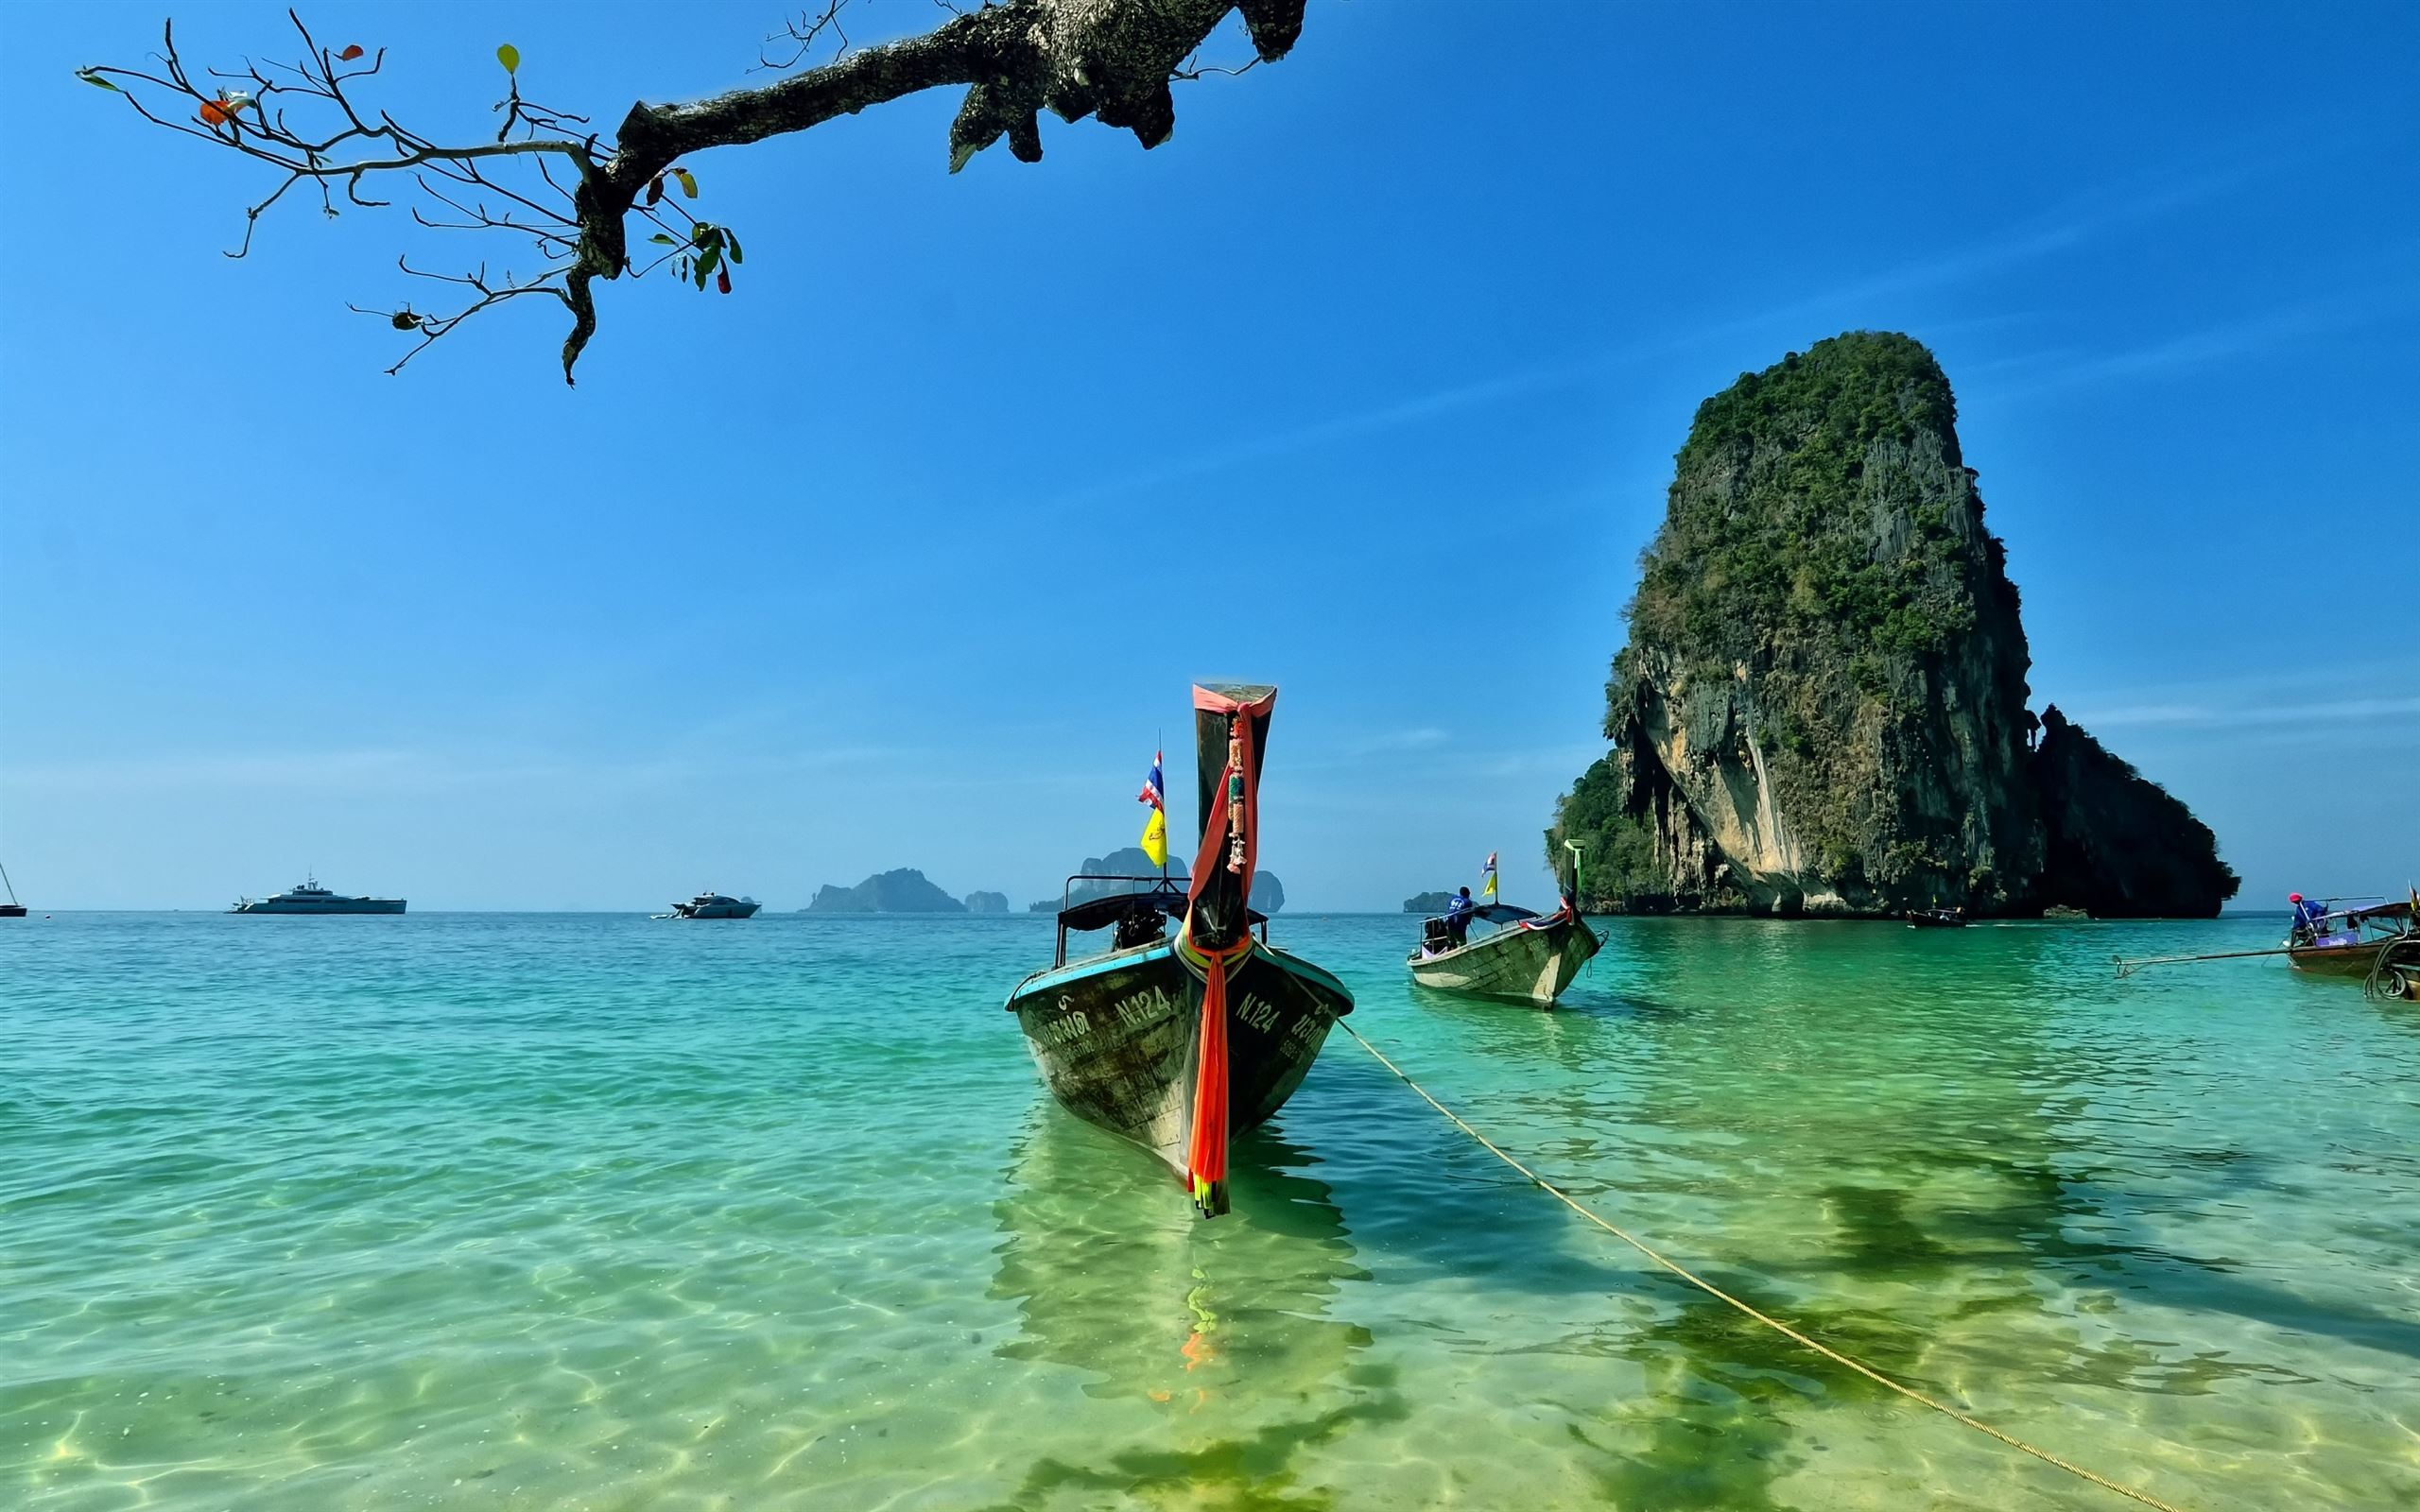 2560x1600 Railay Beach Thailand MacBook Air Wallpaper Download